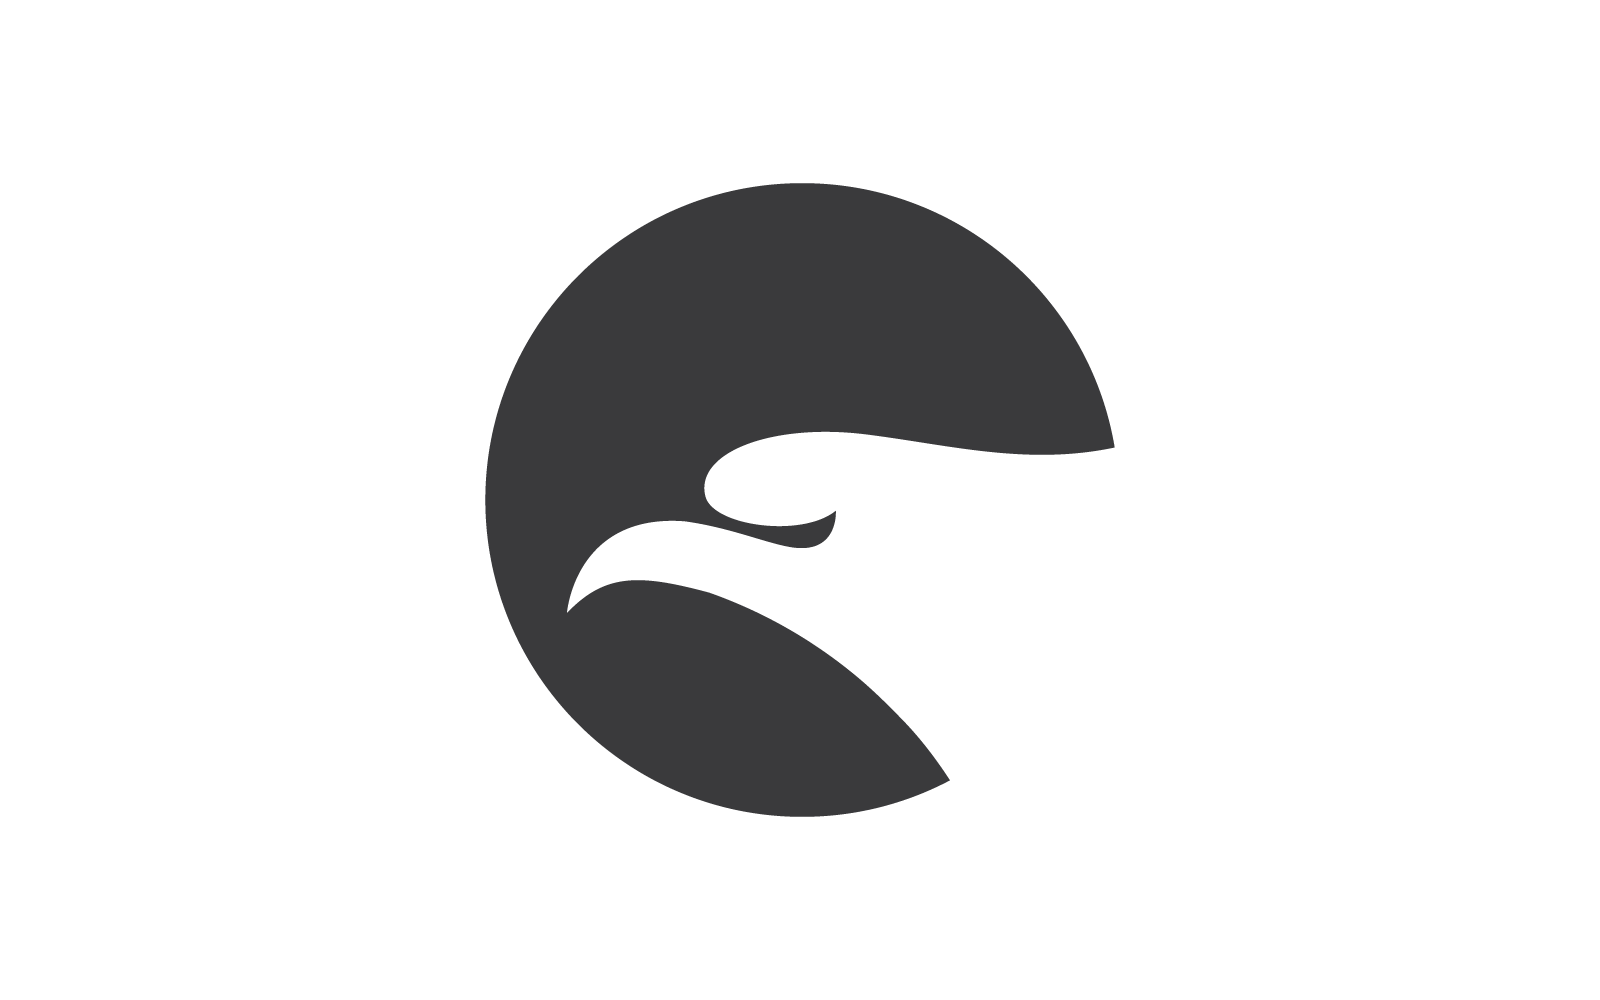 Falcon eagle illustration logo flat design